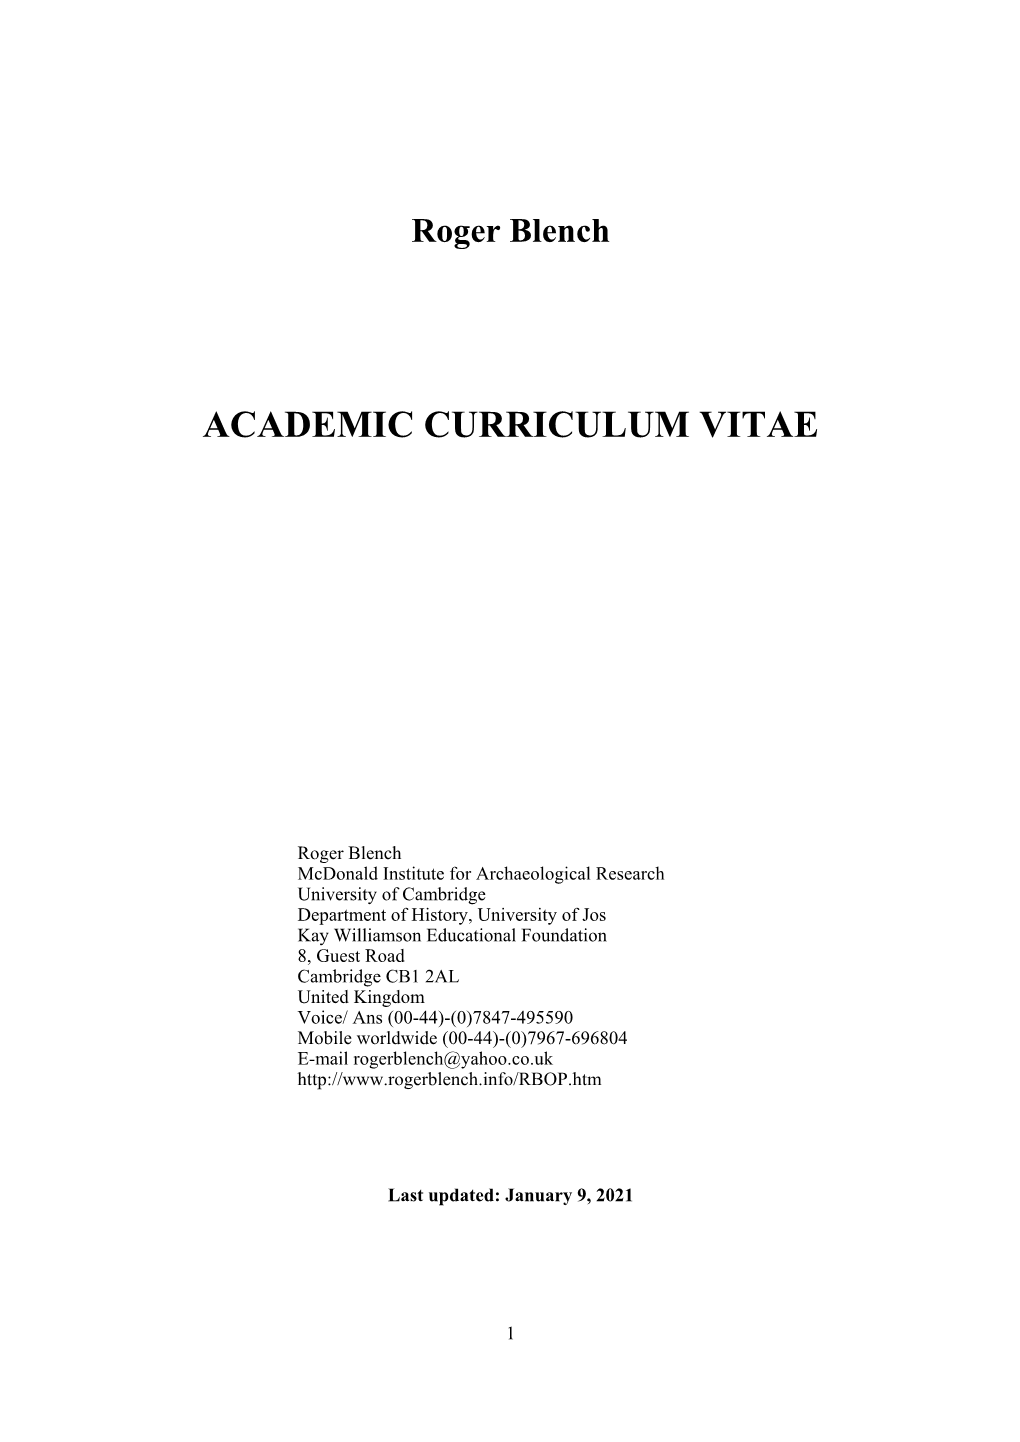 Academic Curriculum Vitae